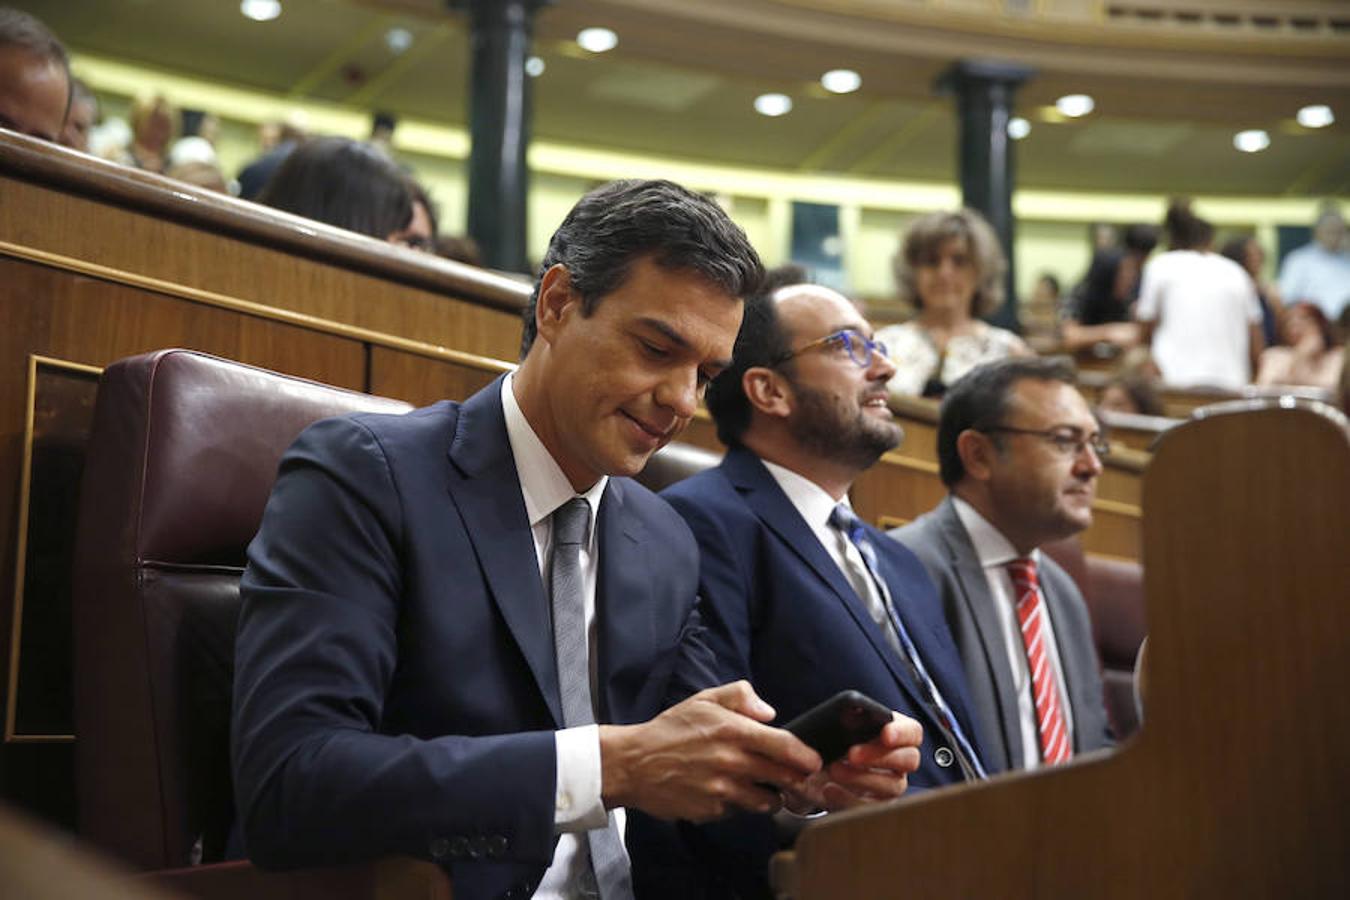 Pedro Sánchez momentos antes de dirigirse al hemiciclo para dar su respuesta a Mariano Rajoy